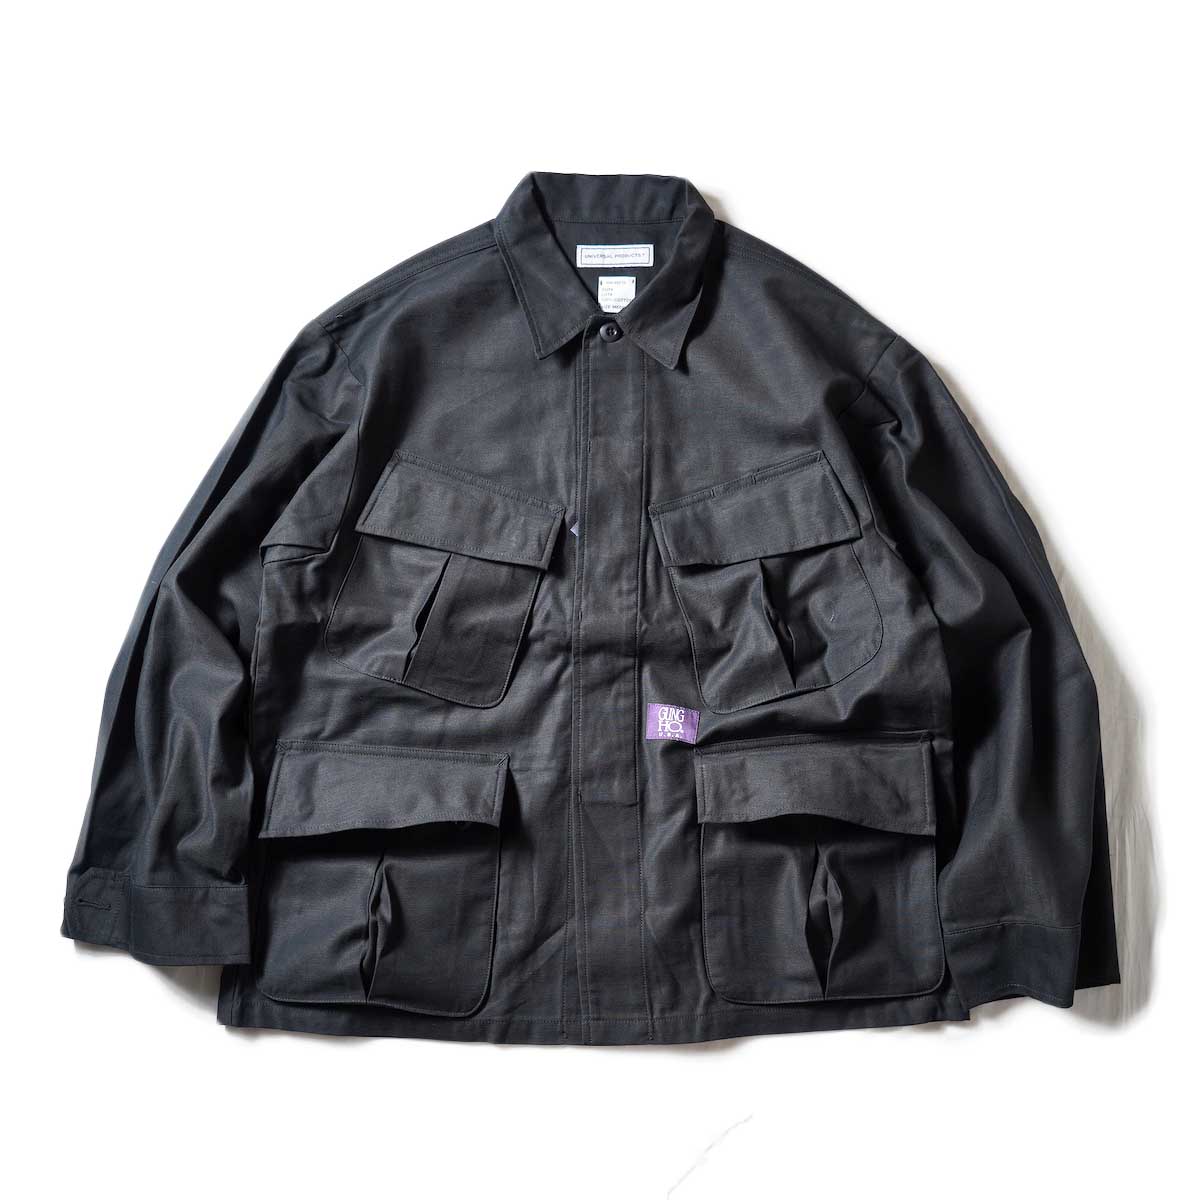 UNIVERSAL PRODUCTS / Gung Ho Fatigue Jacket (Black)